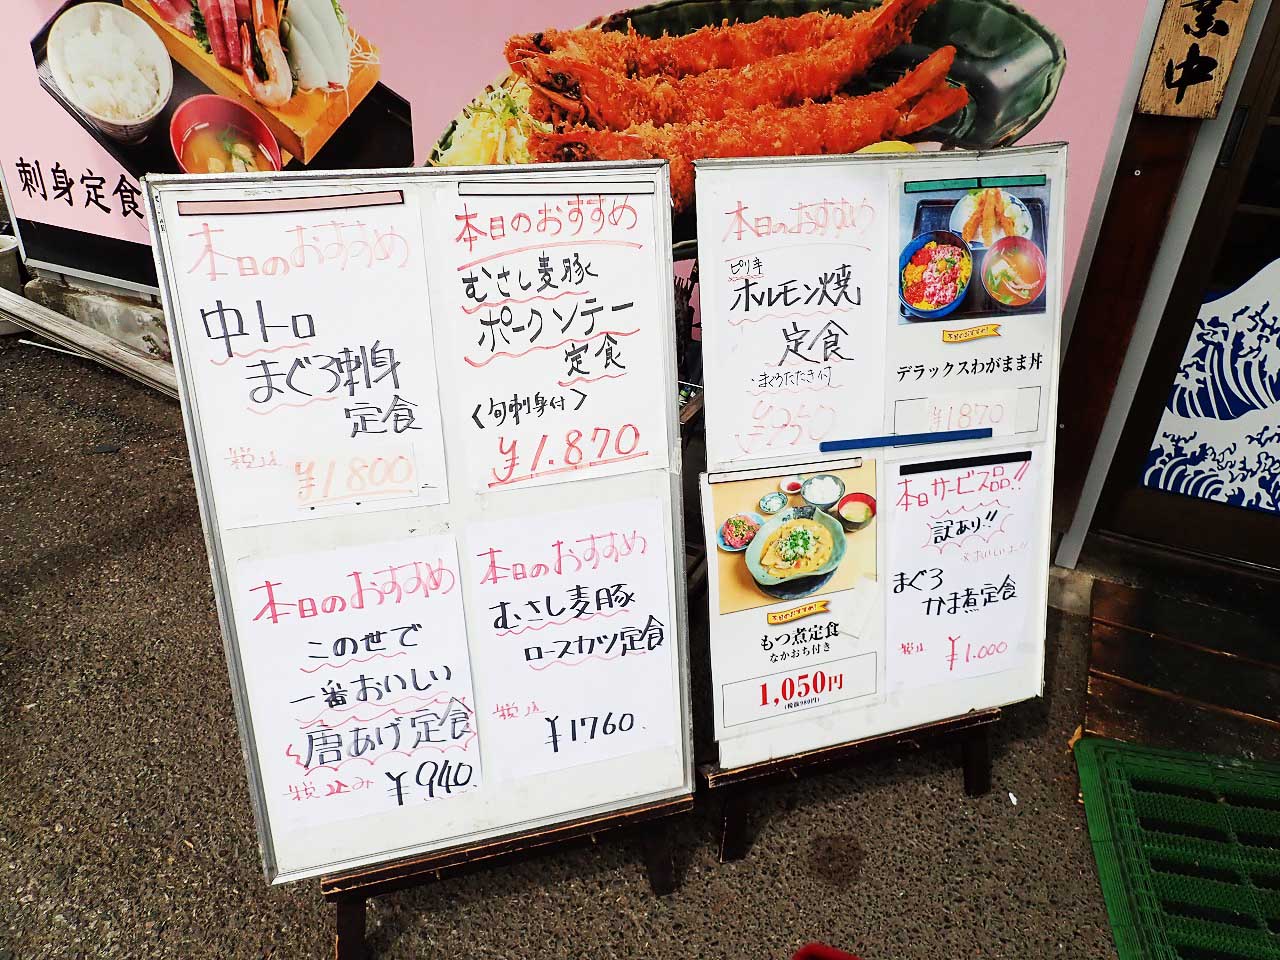 『わがまま丼』で有名な『和食・味どころ 花いち』